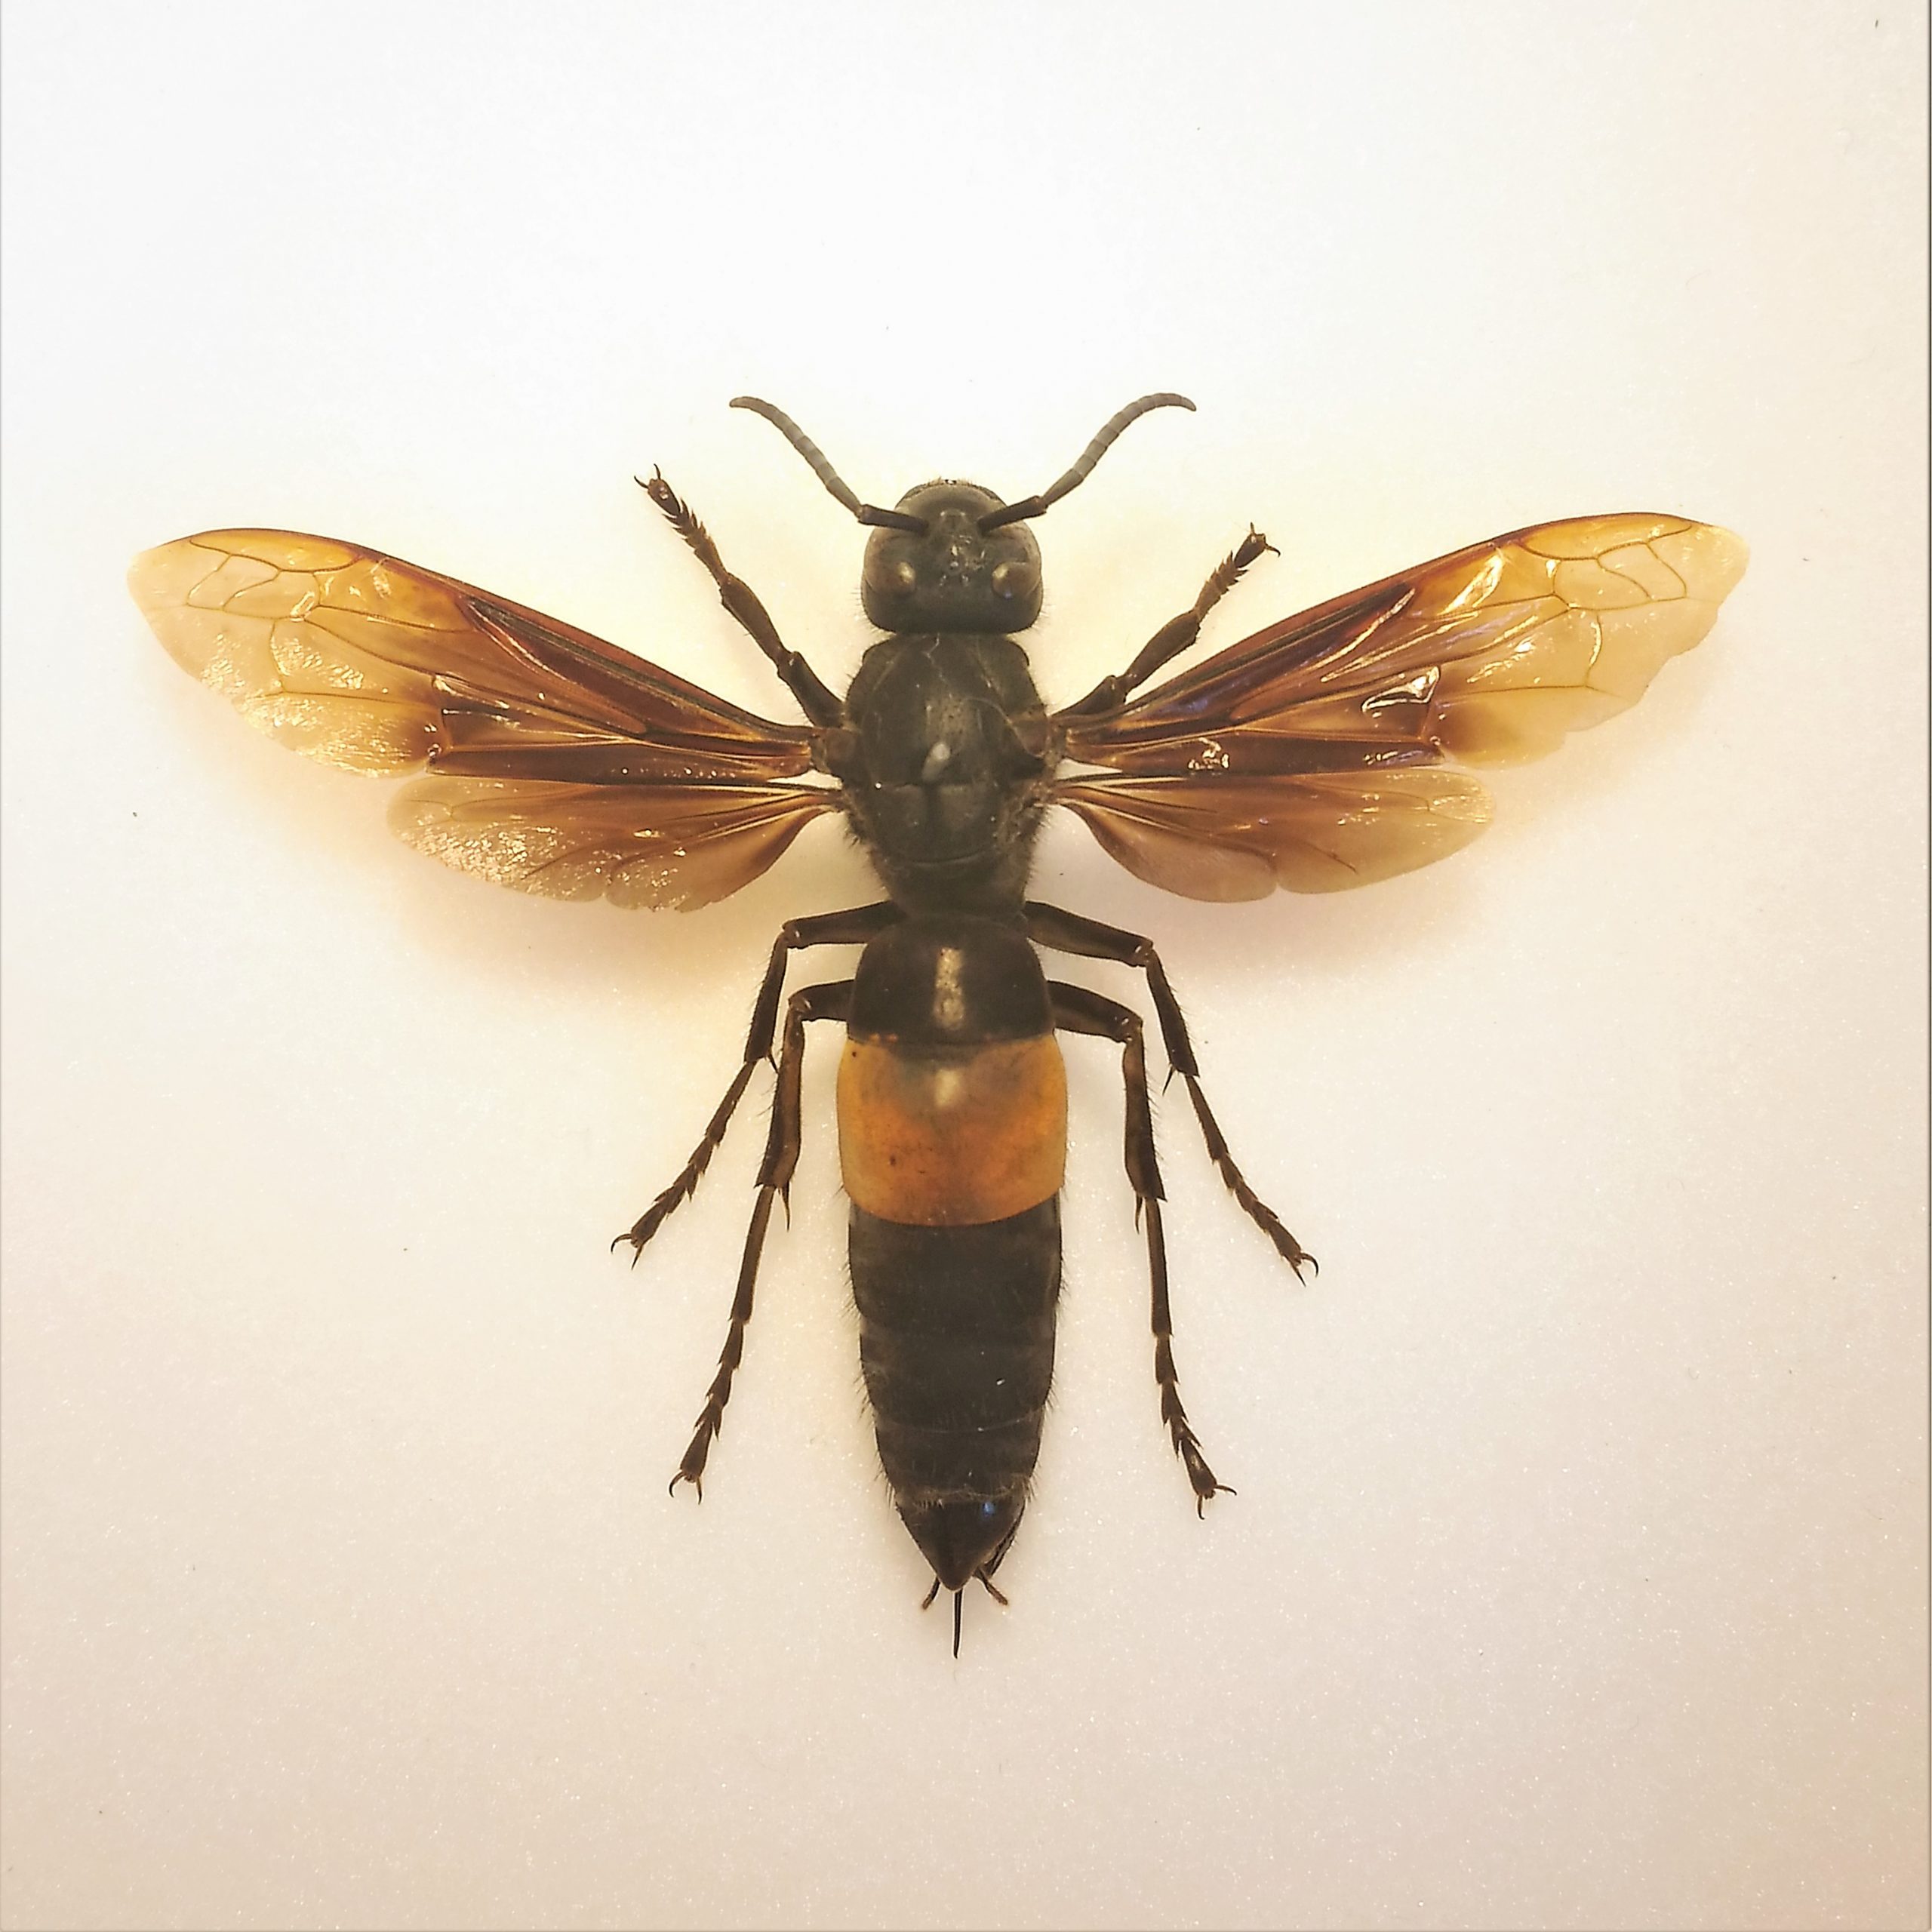 Pinned specimen of a greater banded hornet.